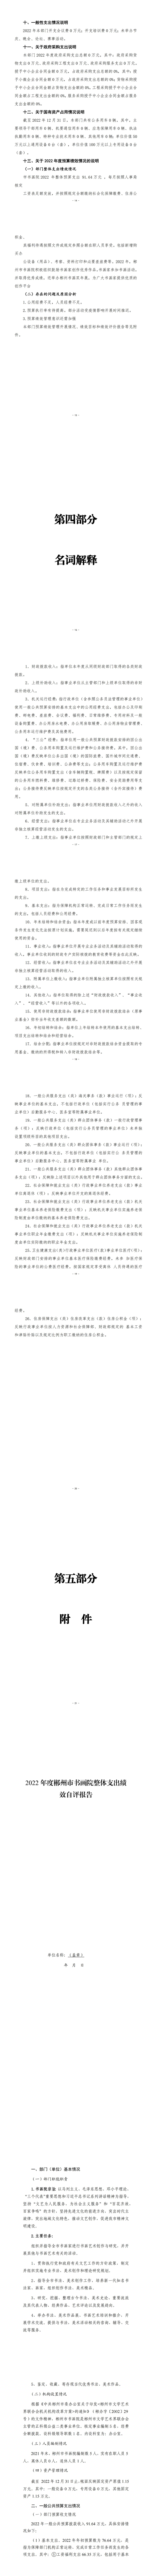 461002-郴州市书画院2022年度部门决算公开_02.jpg